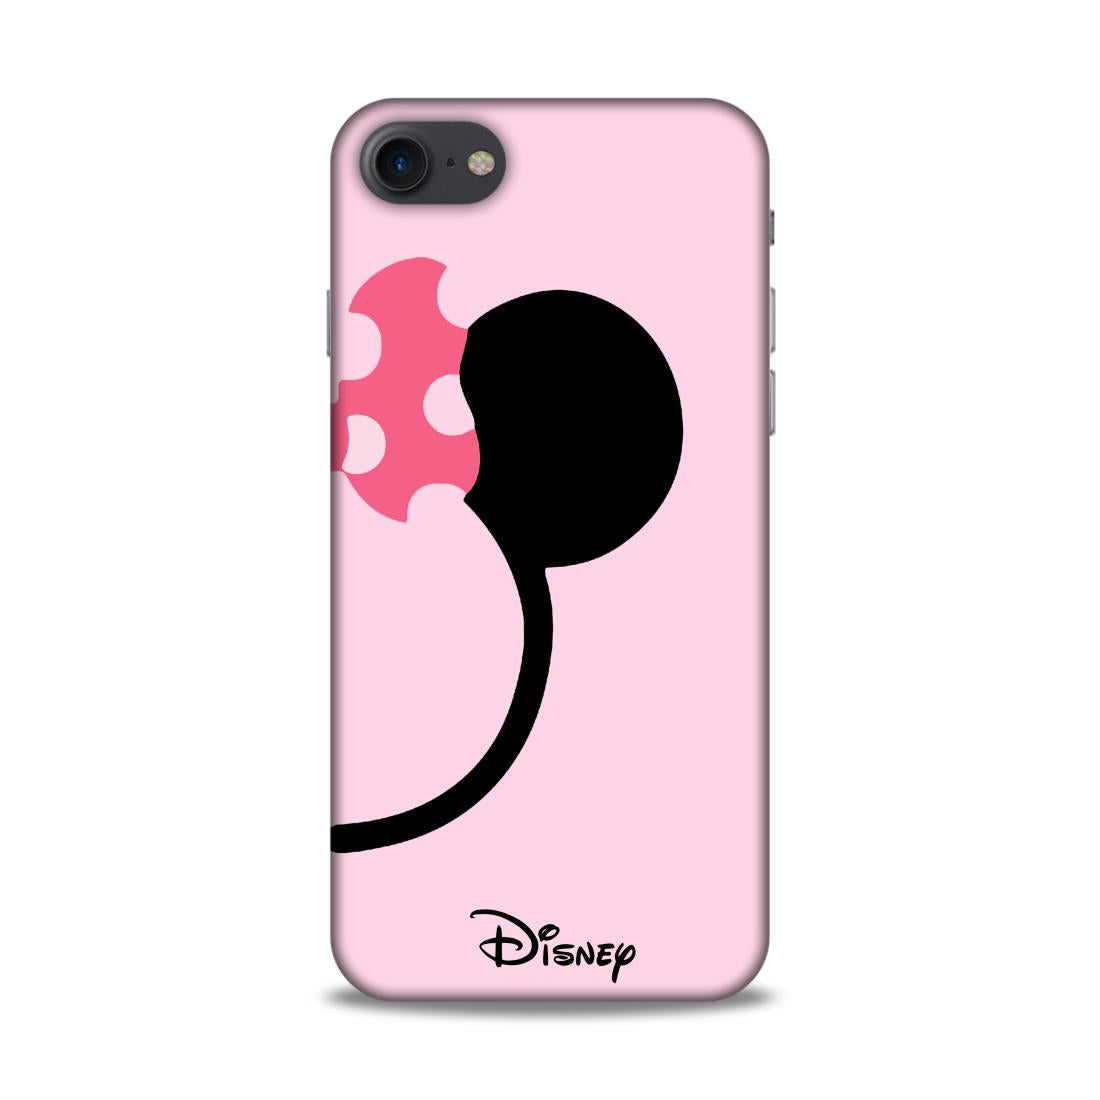 Disney Hard Back Case For Apple iPhone 7 / 8 / SE 2020